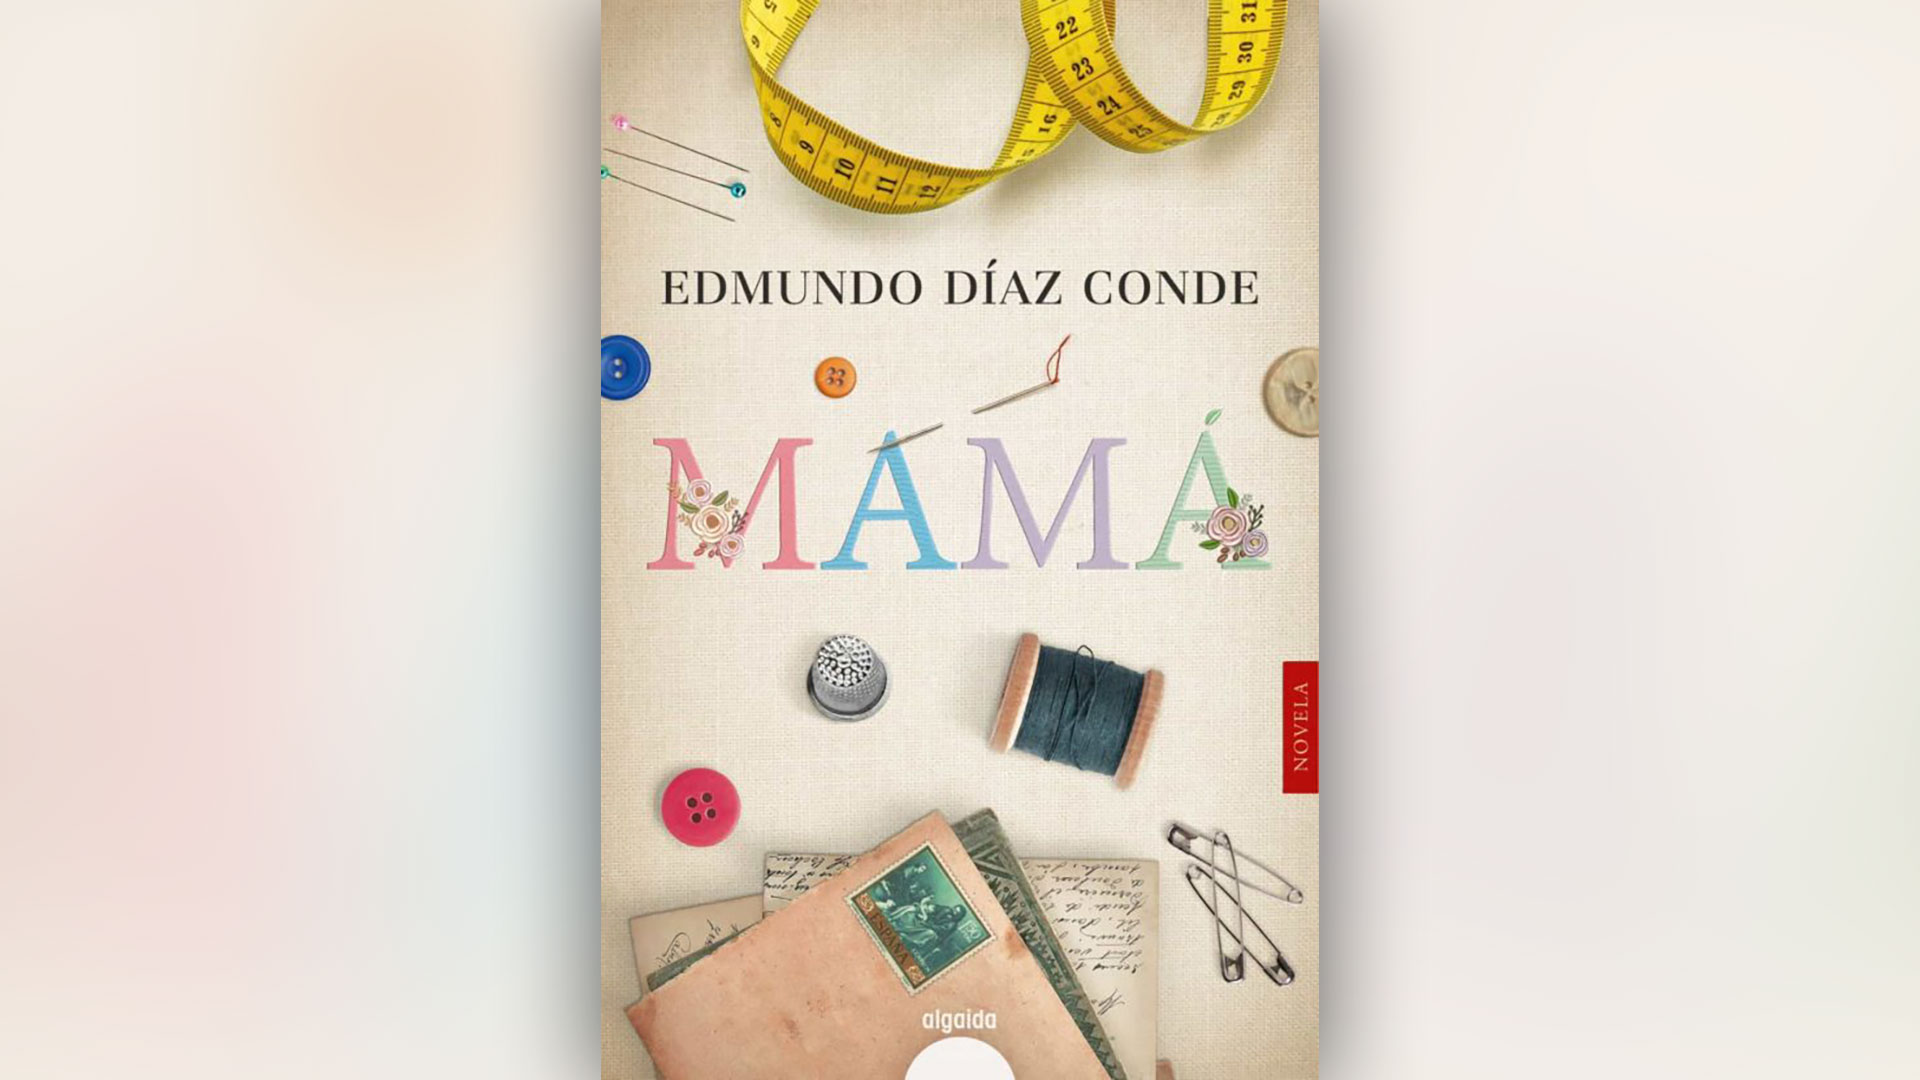 Una madre costurera, la sospecha de una traición y la promesa de un escritor en la nueva obra del español Edmundo Díaz Conde